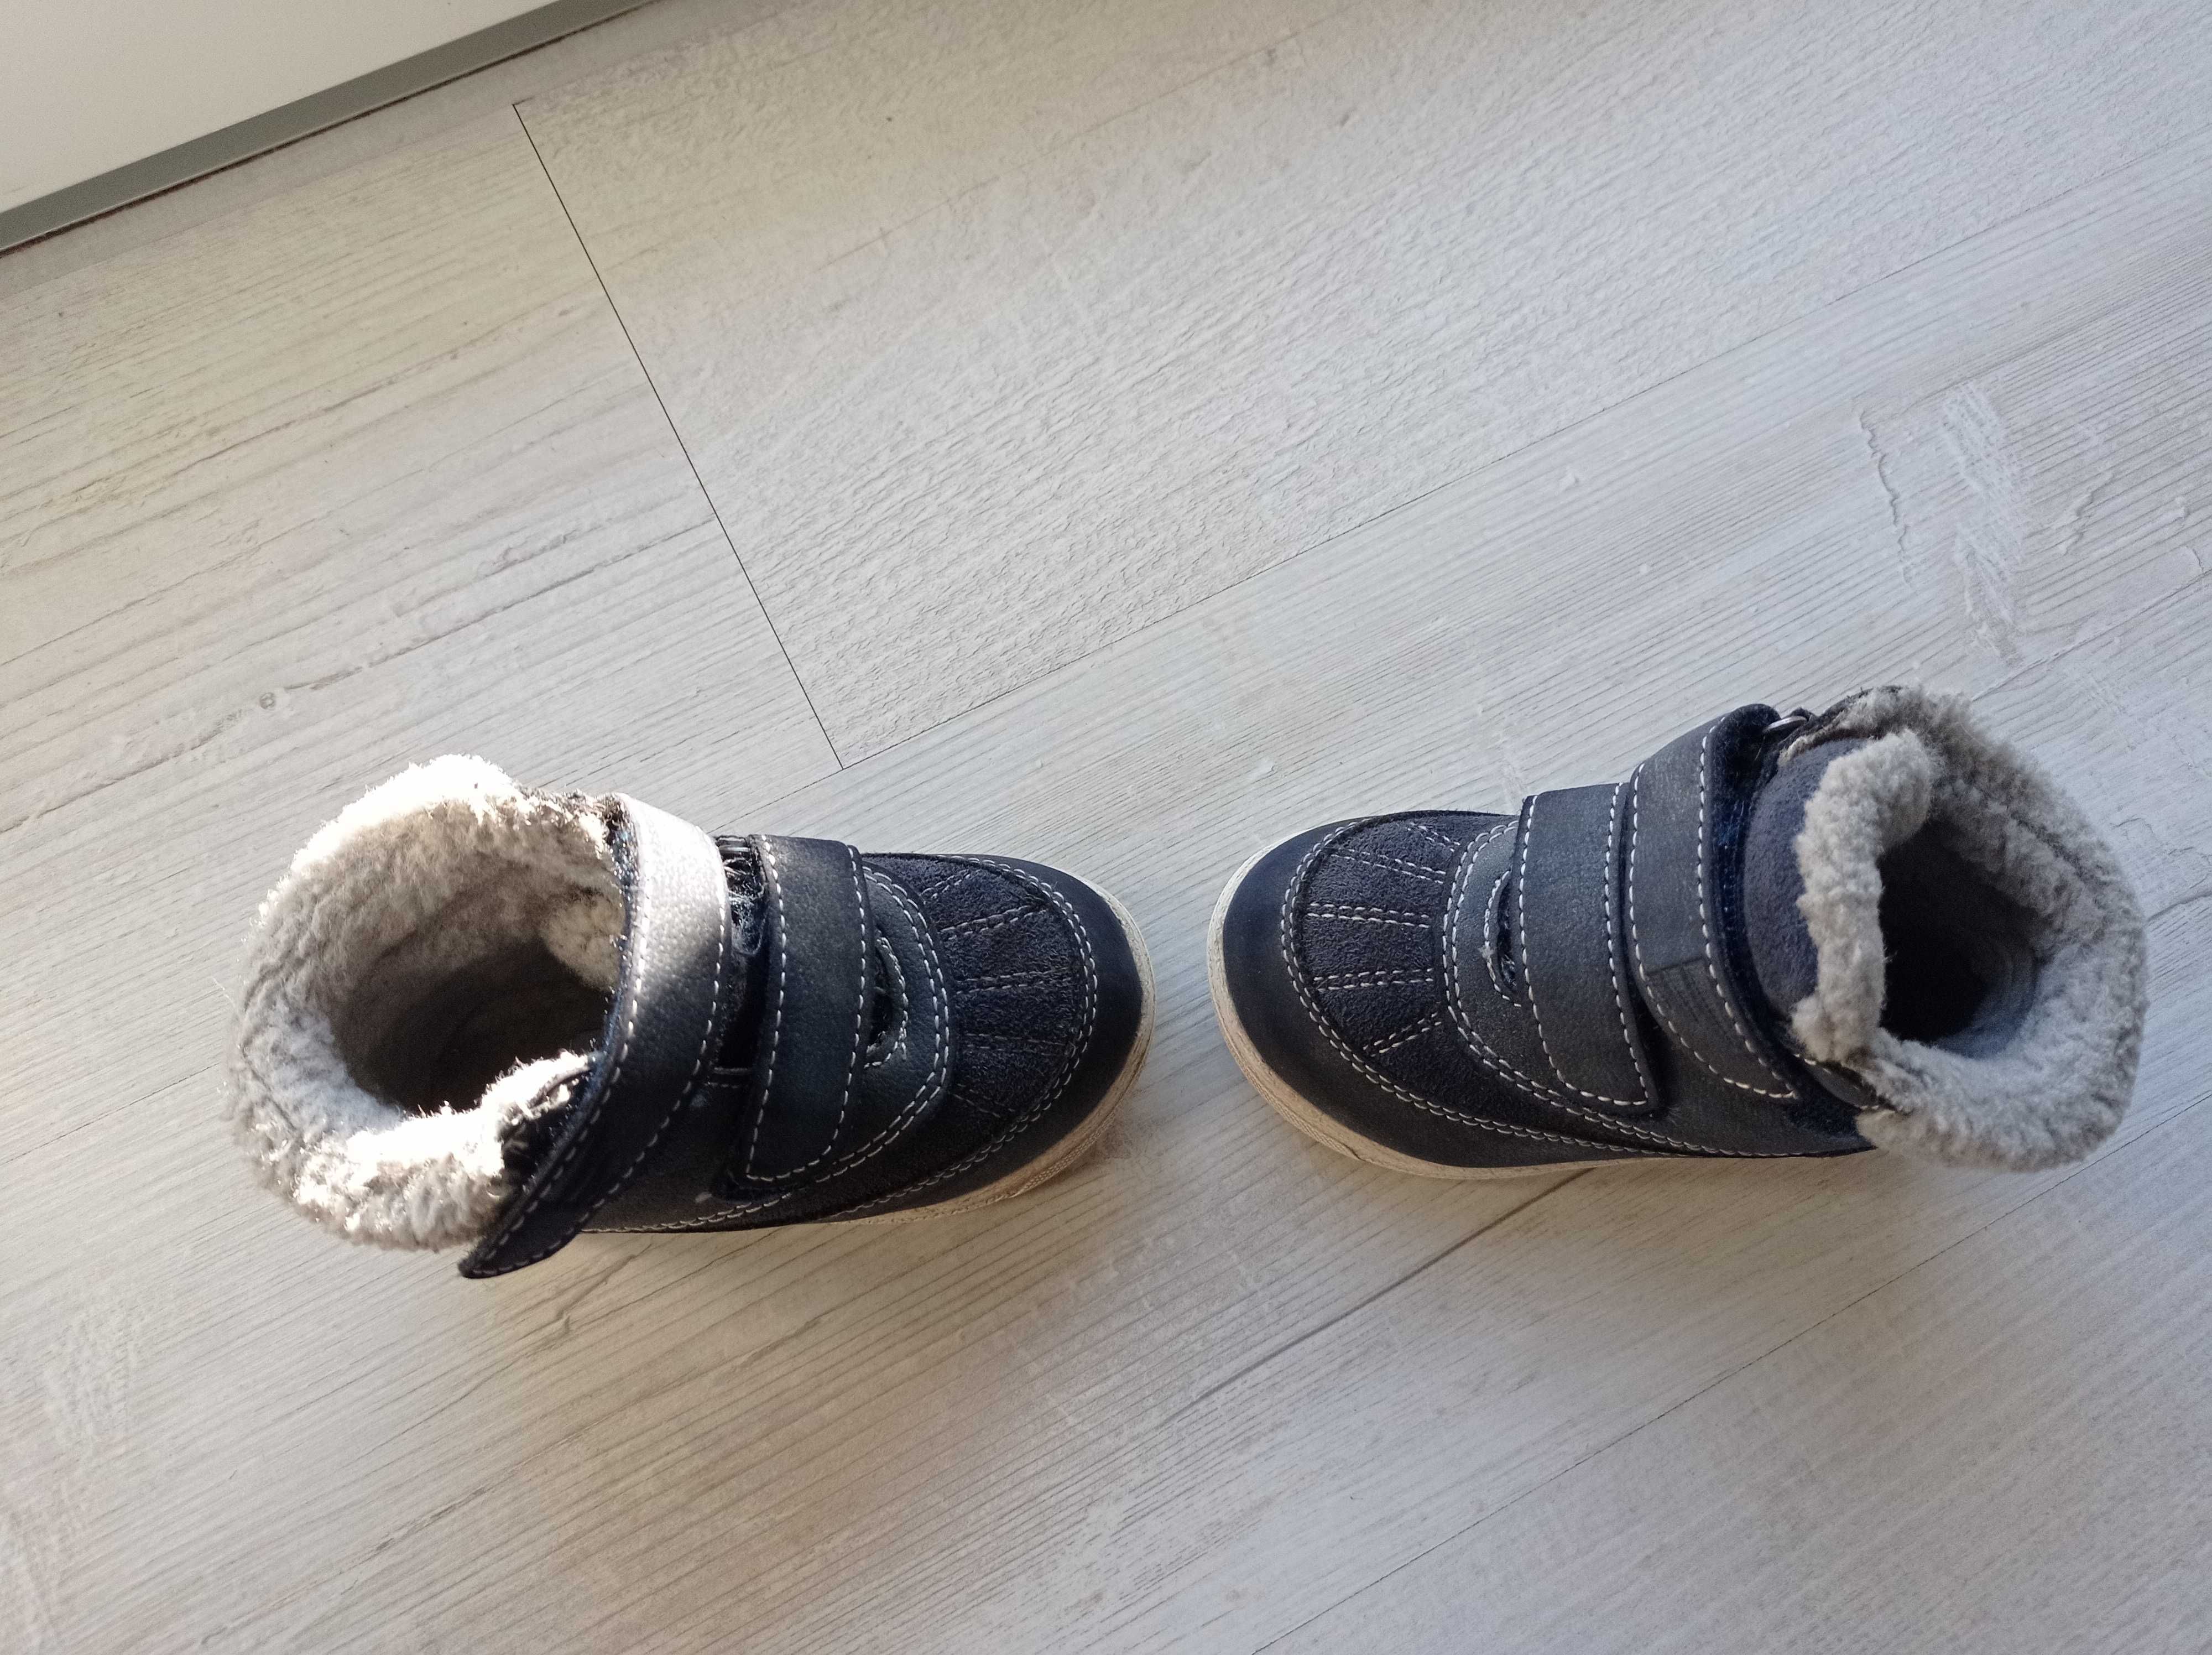 Buty zimowe chłopięce rozmiar 21